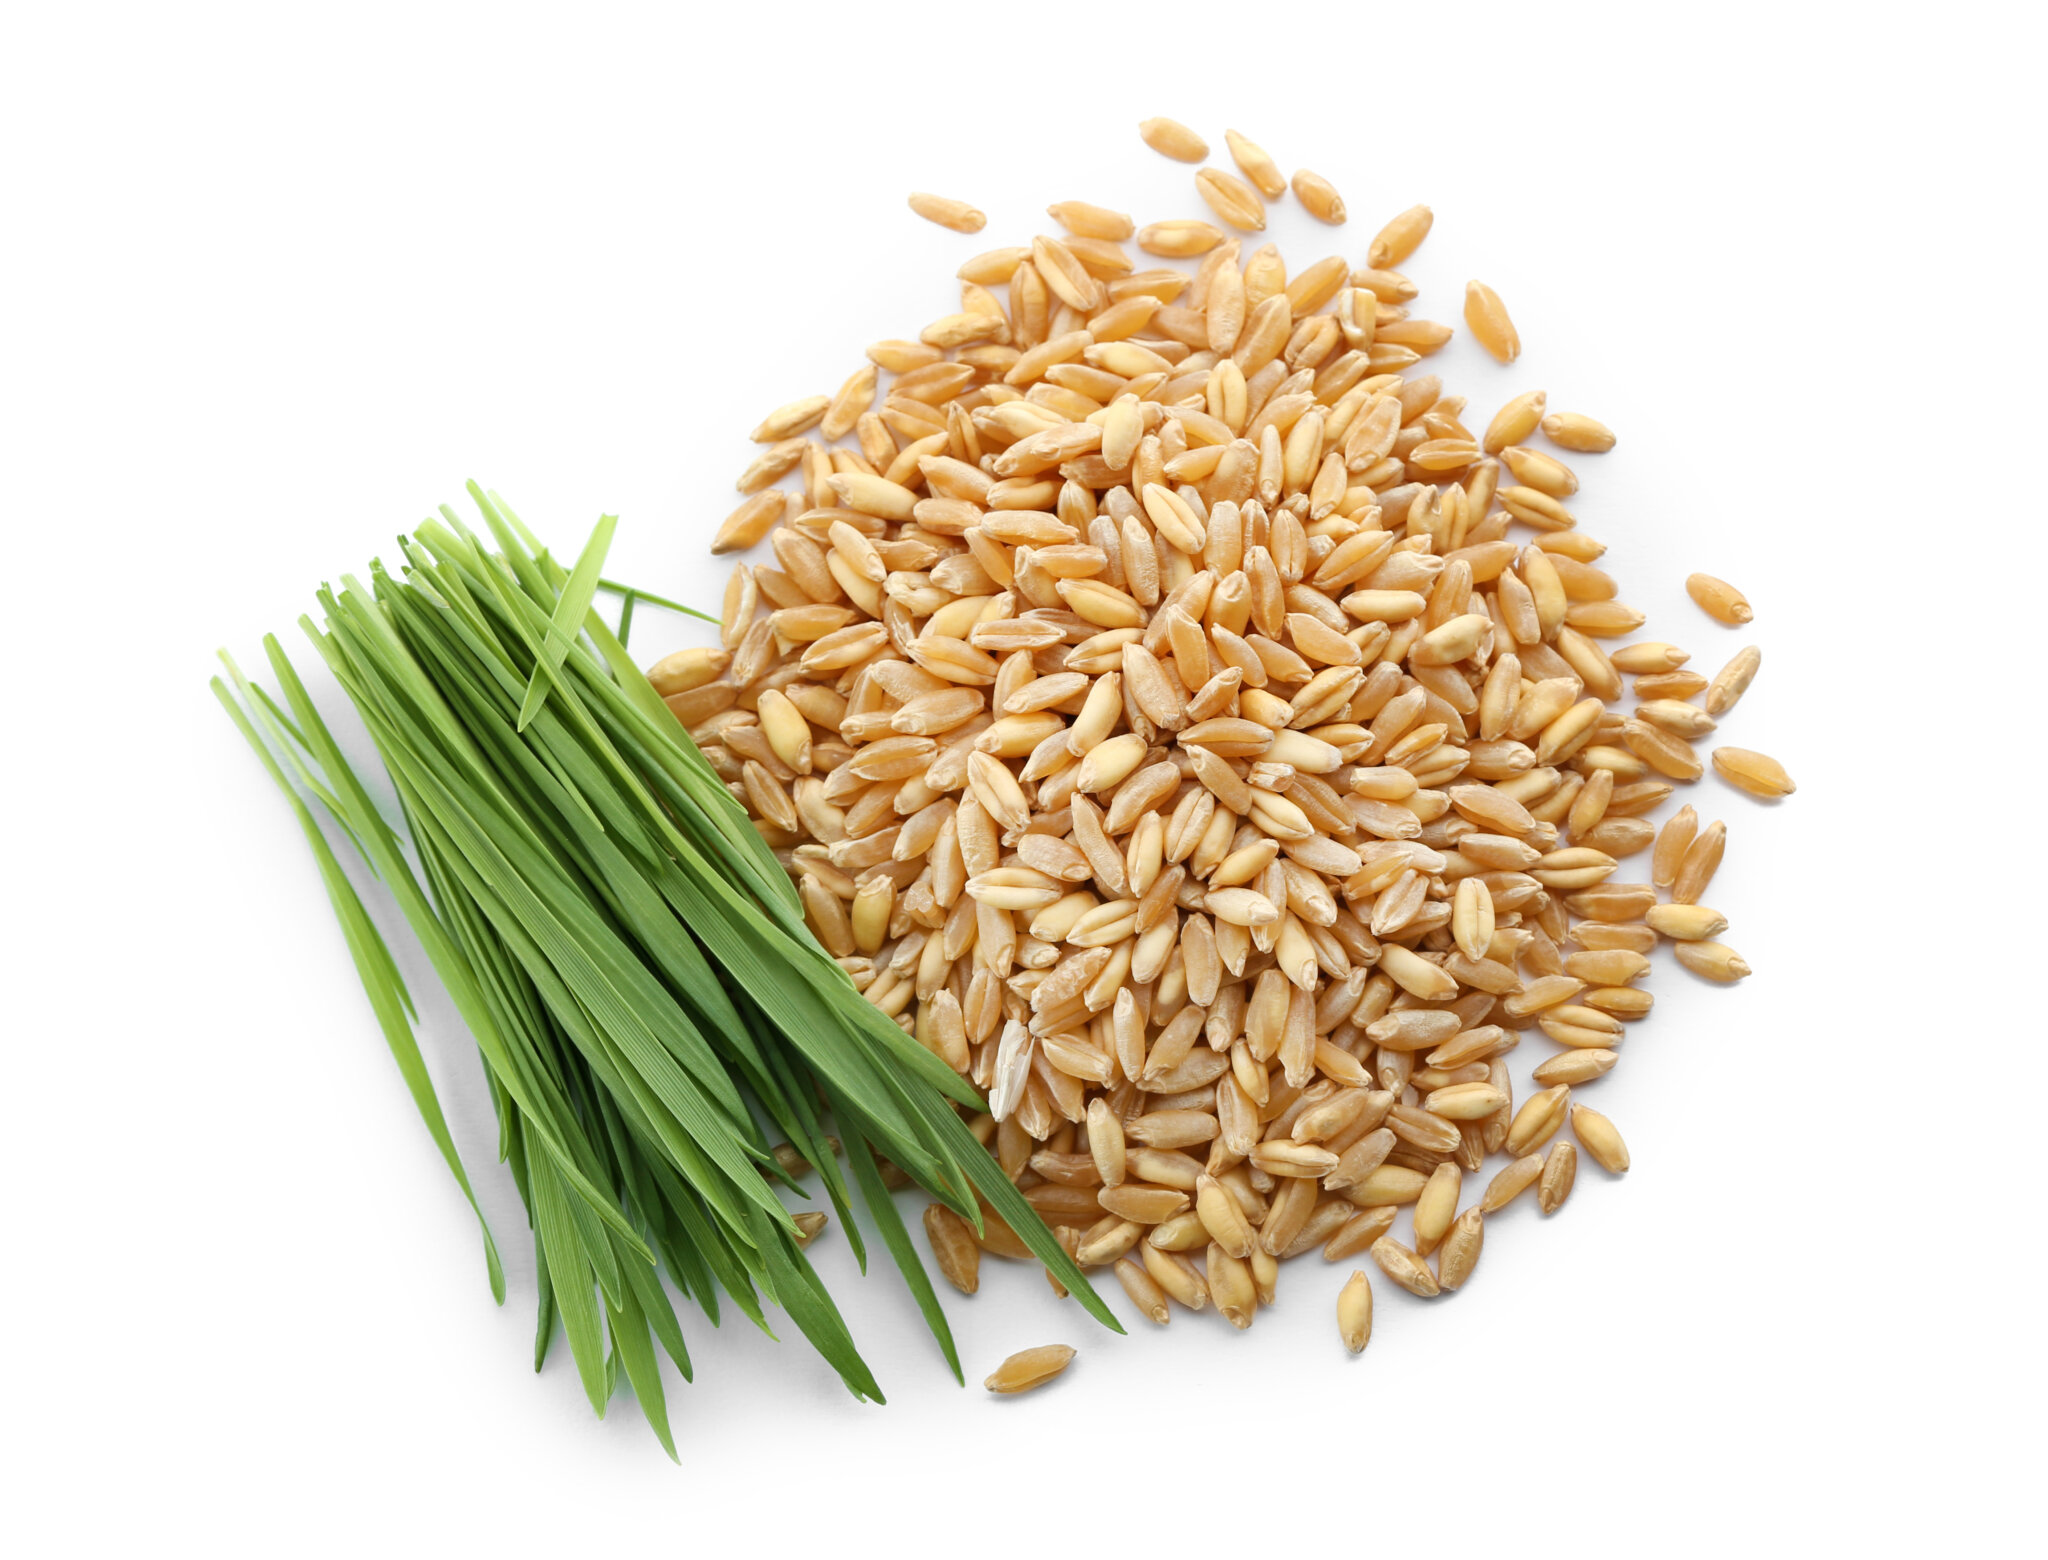 Pasto de trigo una maravilla natural con grandes beneficios para tu salud